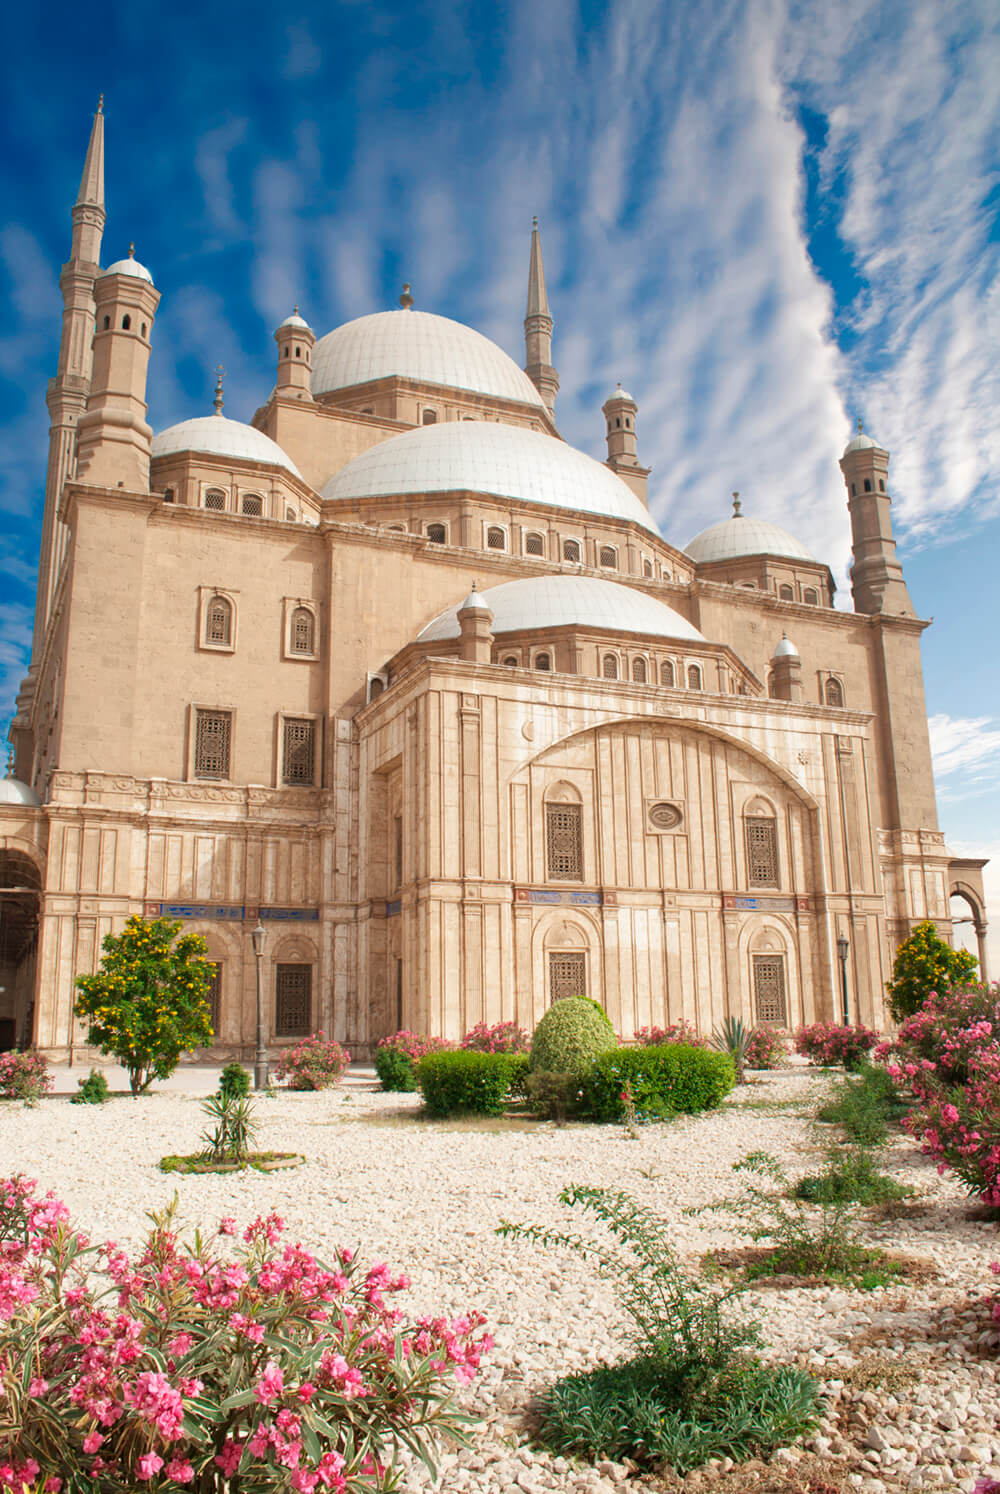 Мечеть в Каире (ширина: 2000 мм, высота: 2800 мм, количество полос: 2)